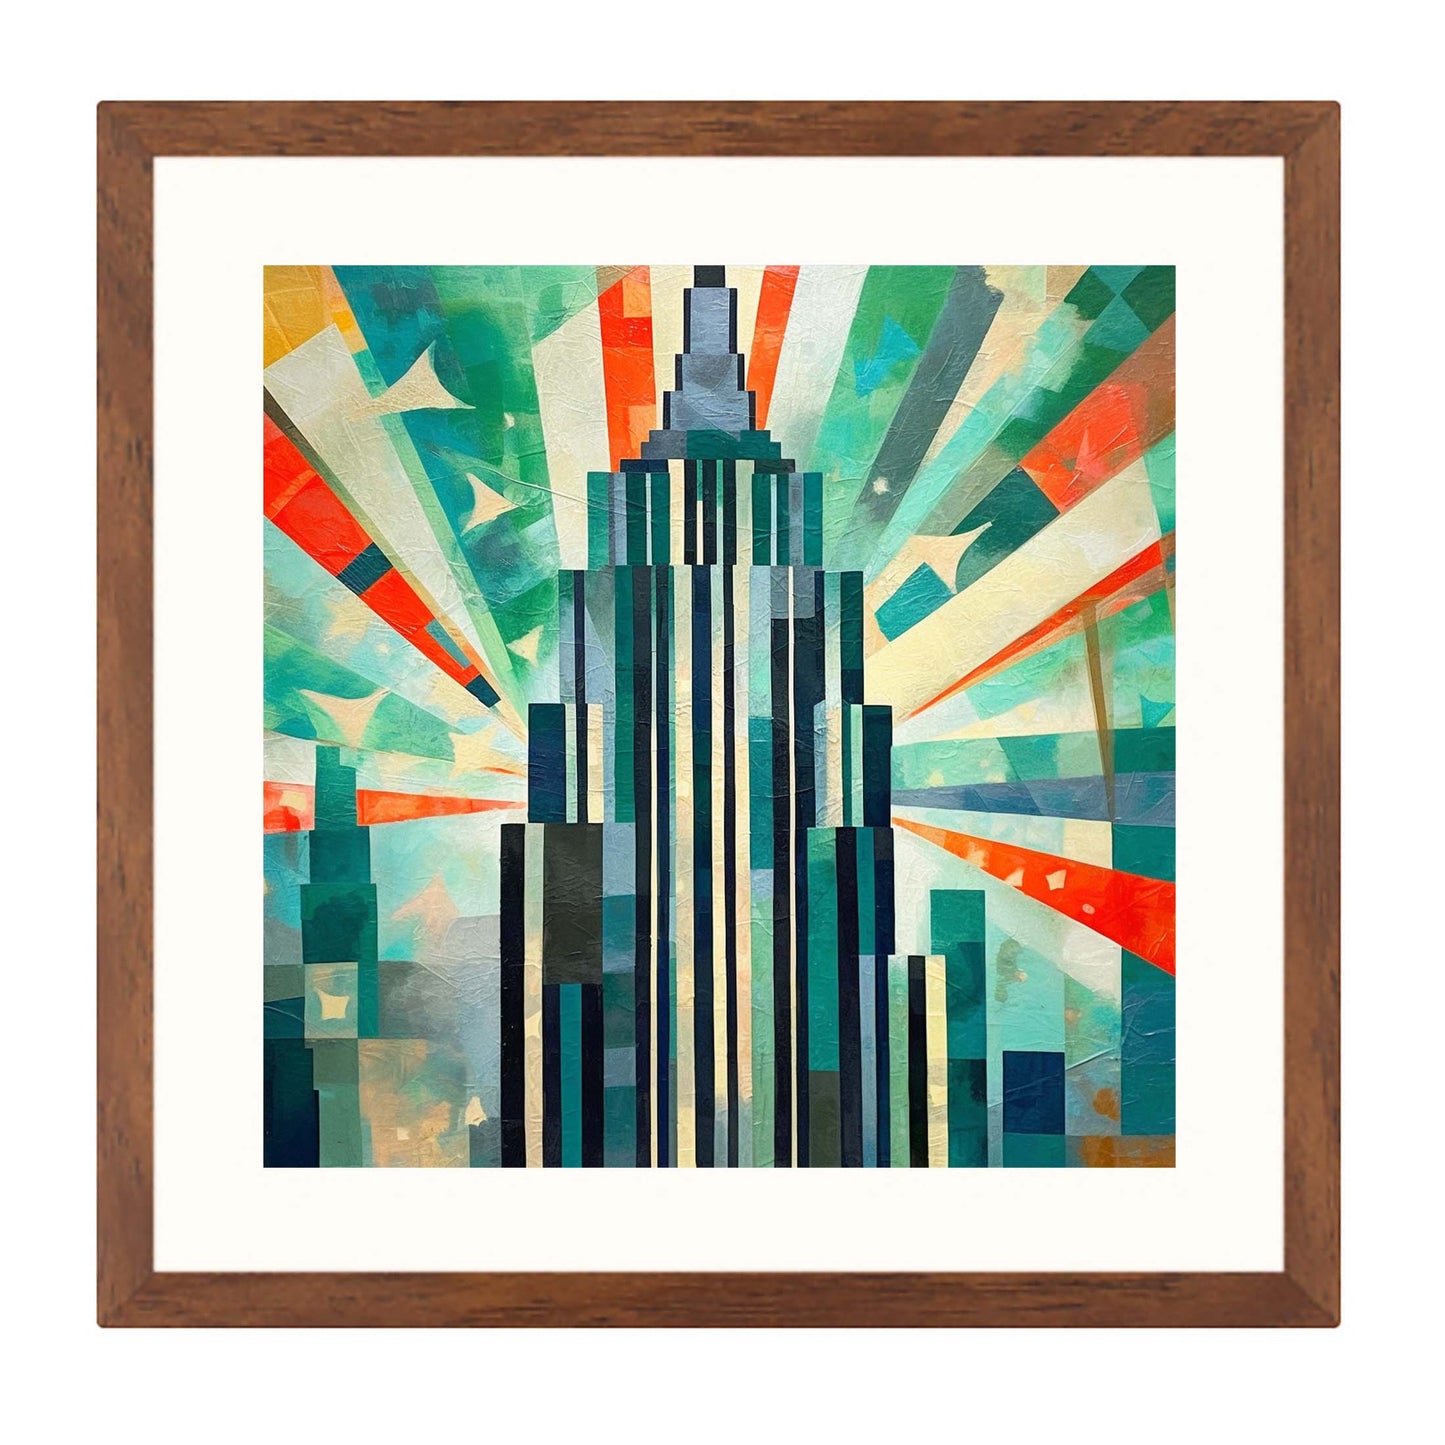 New York Empire State Building - peinture murale dans le style de l'expressionnisme